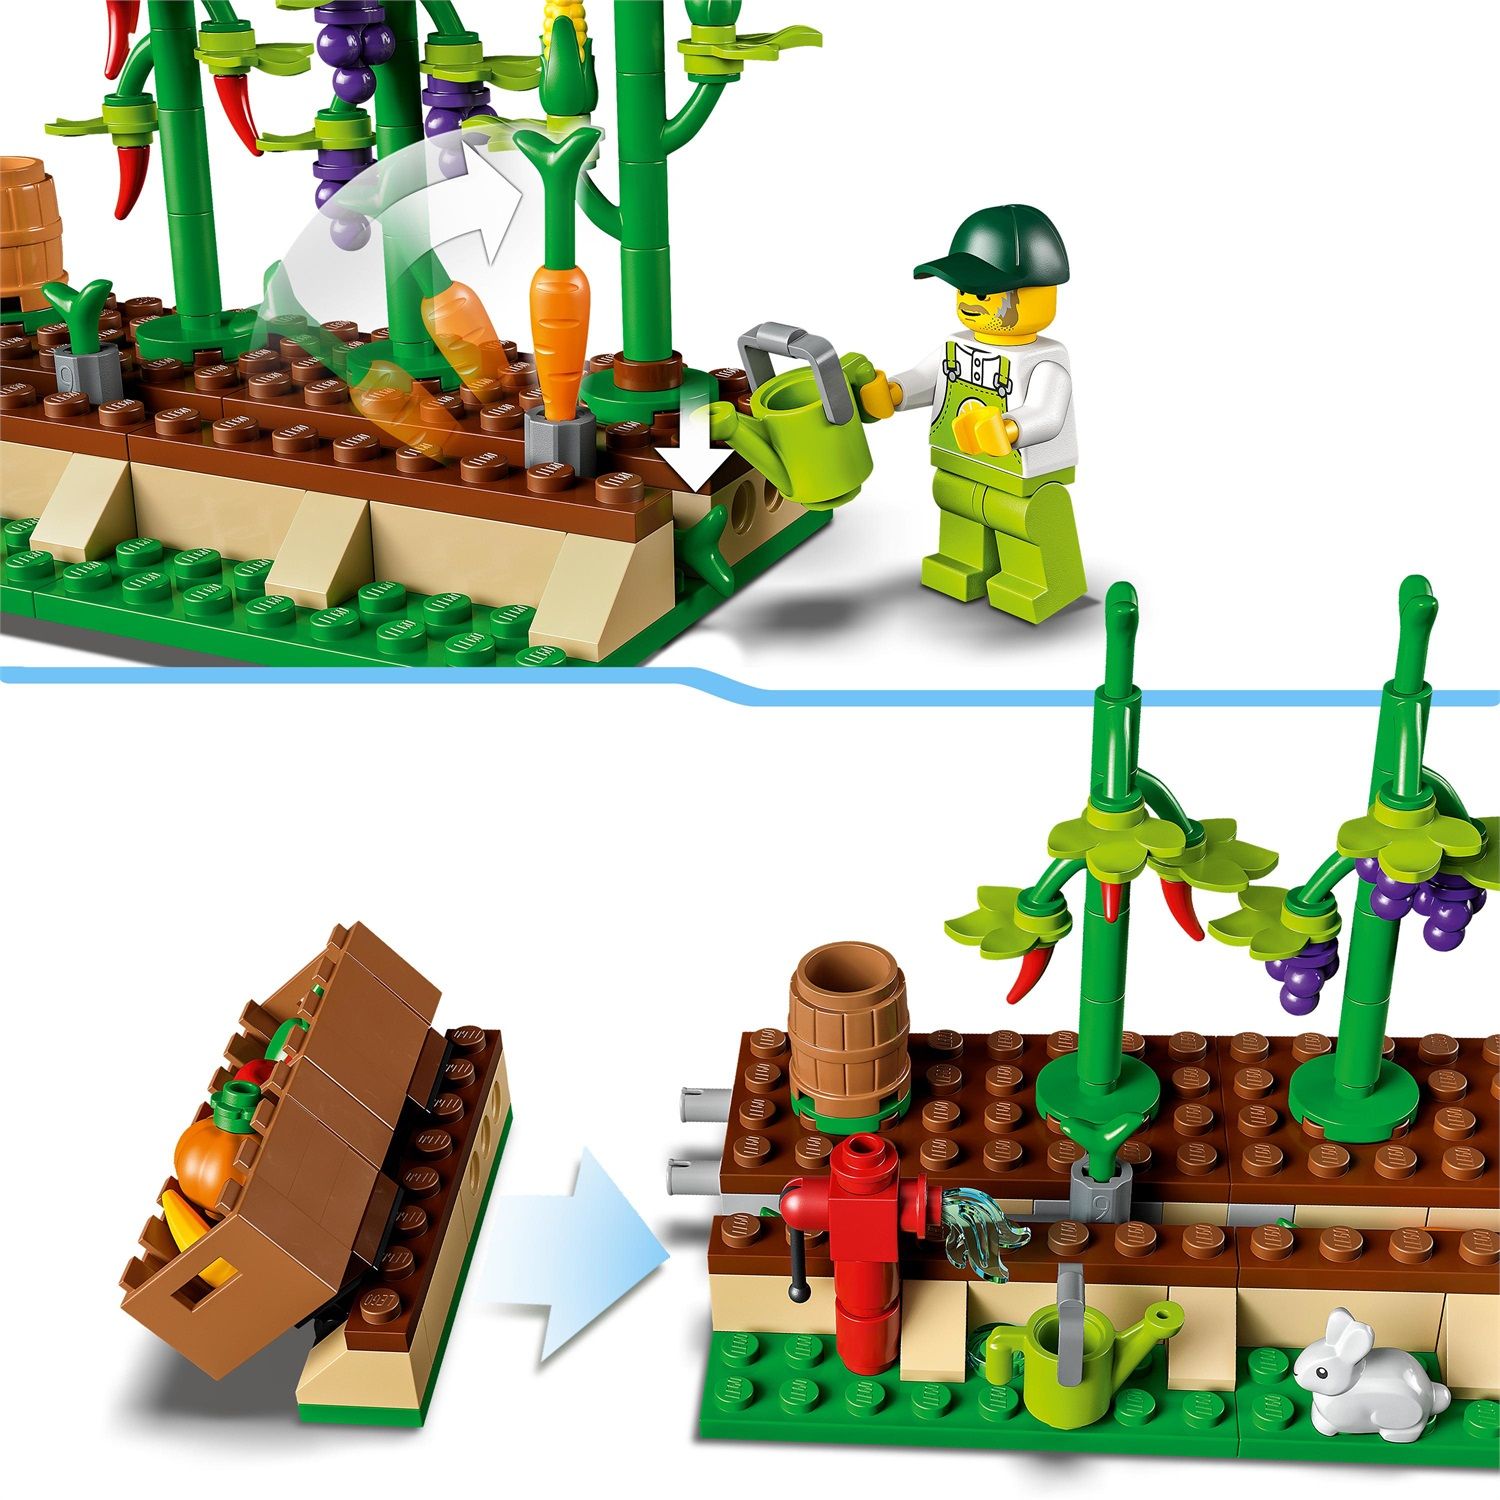 Lego. Contenitore 2 bottoni - LEGO - Set mattoncini - Giocattoli